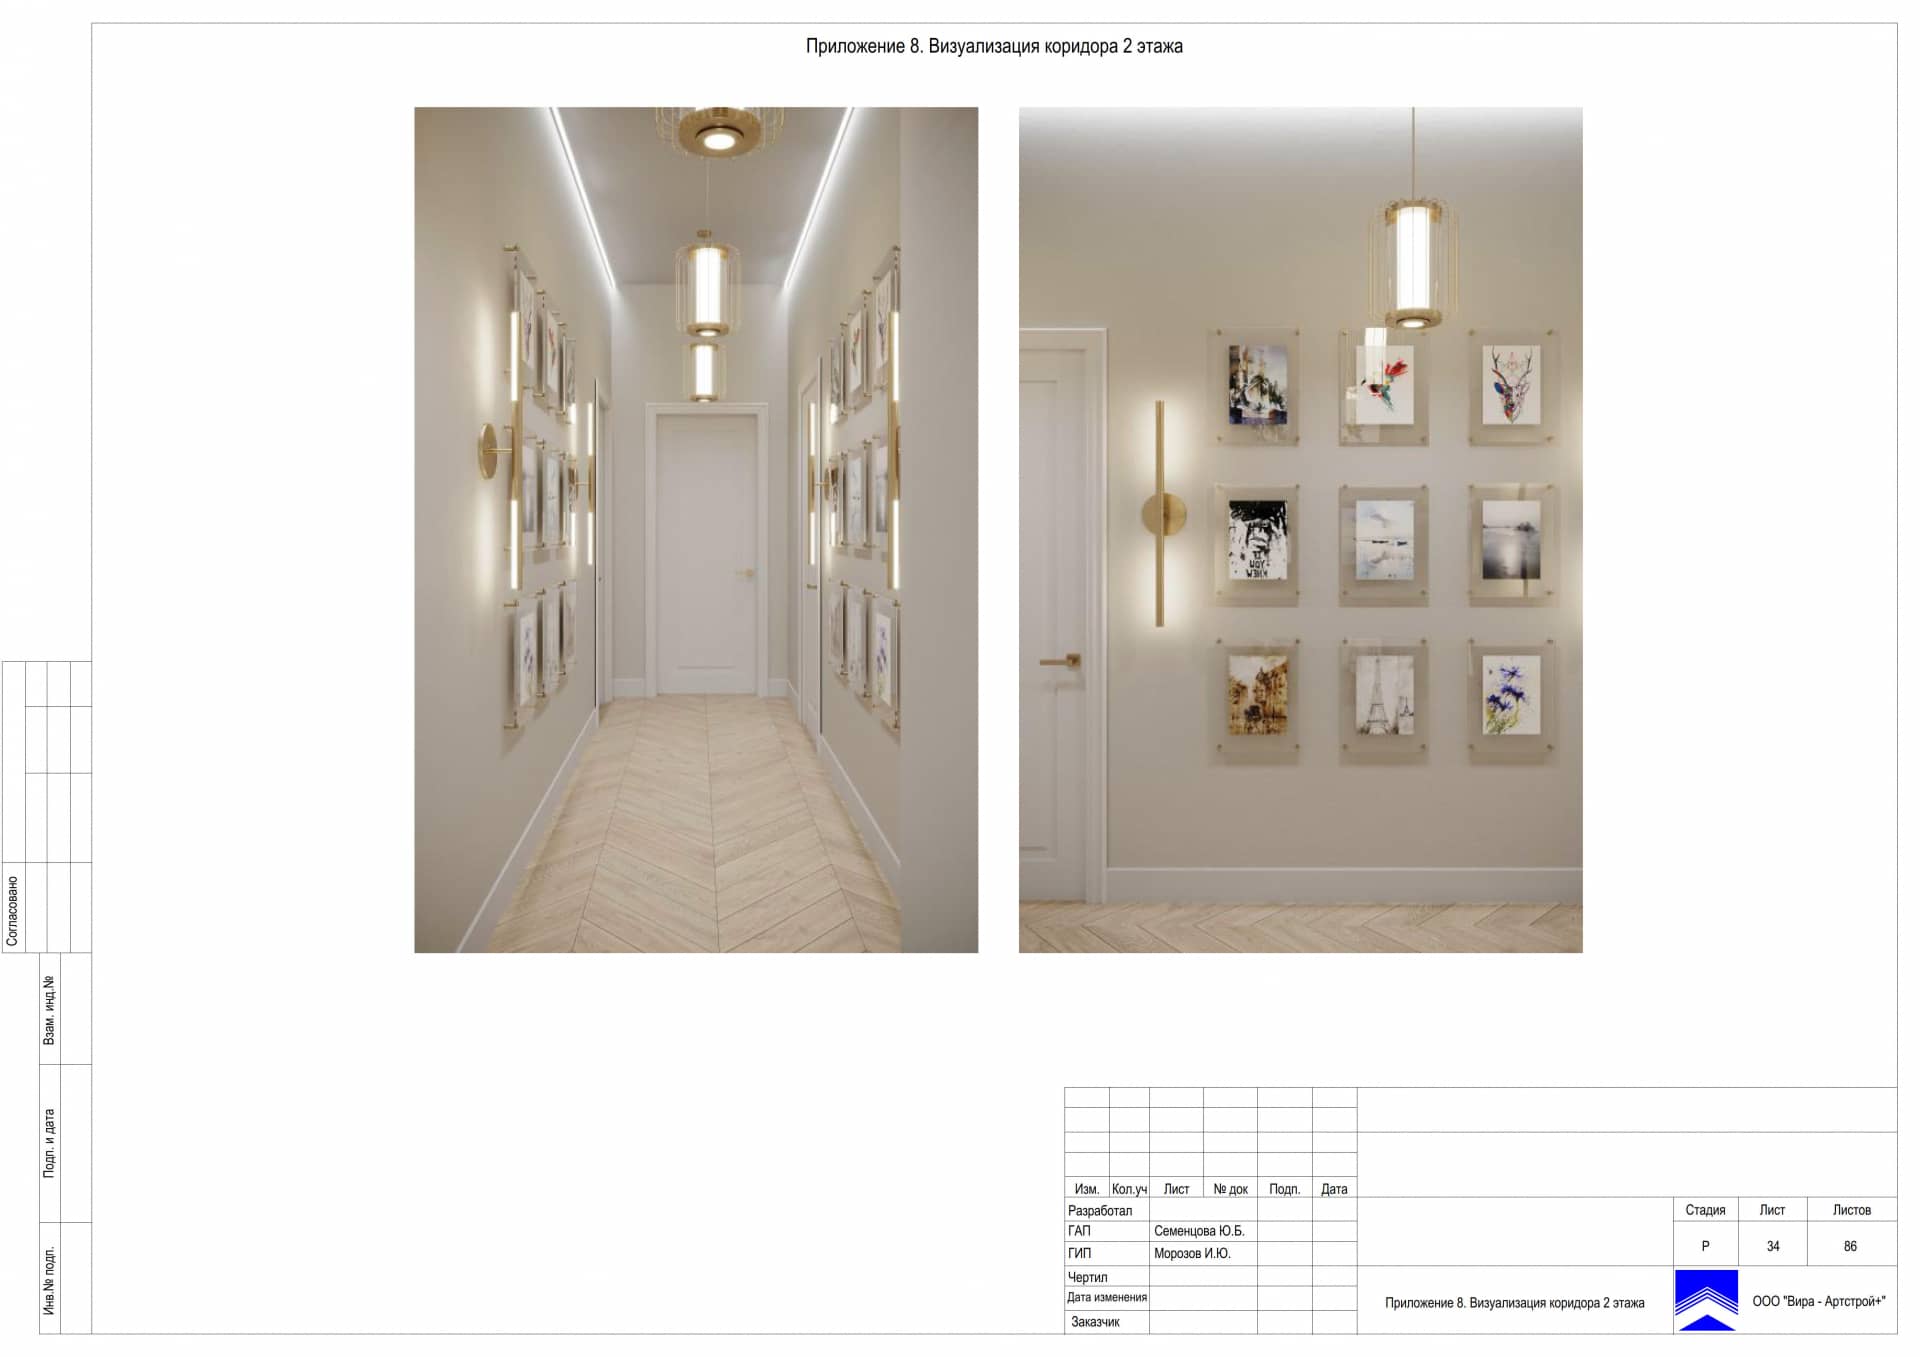 Приложение 8. Визуализация коридора 2 этажа, дом 471 м² в КП «Сорочаны»